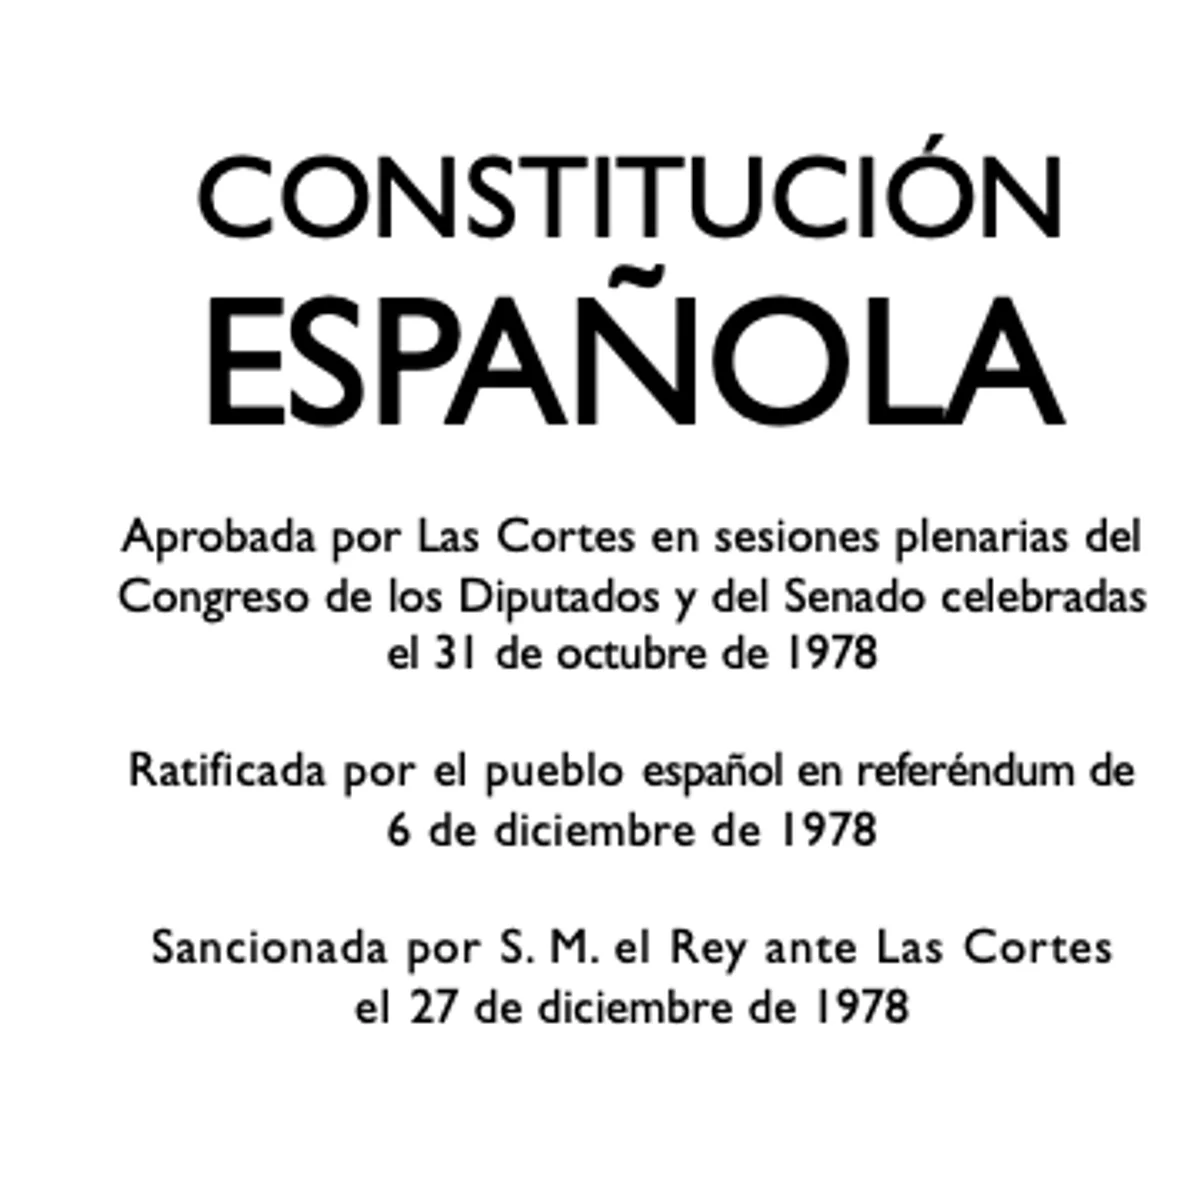 Qué es la Constitución Española?